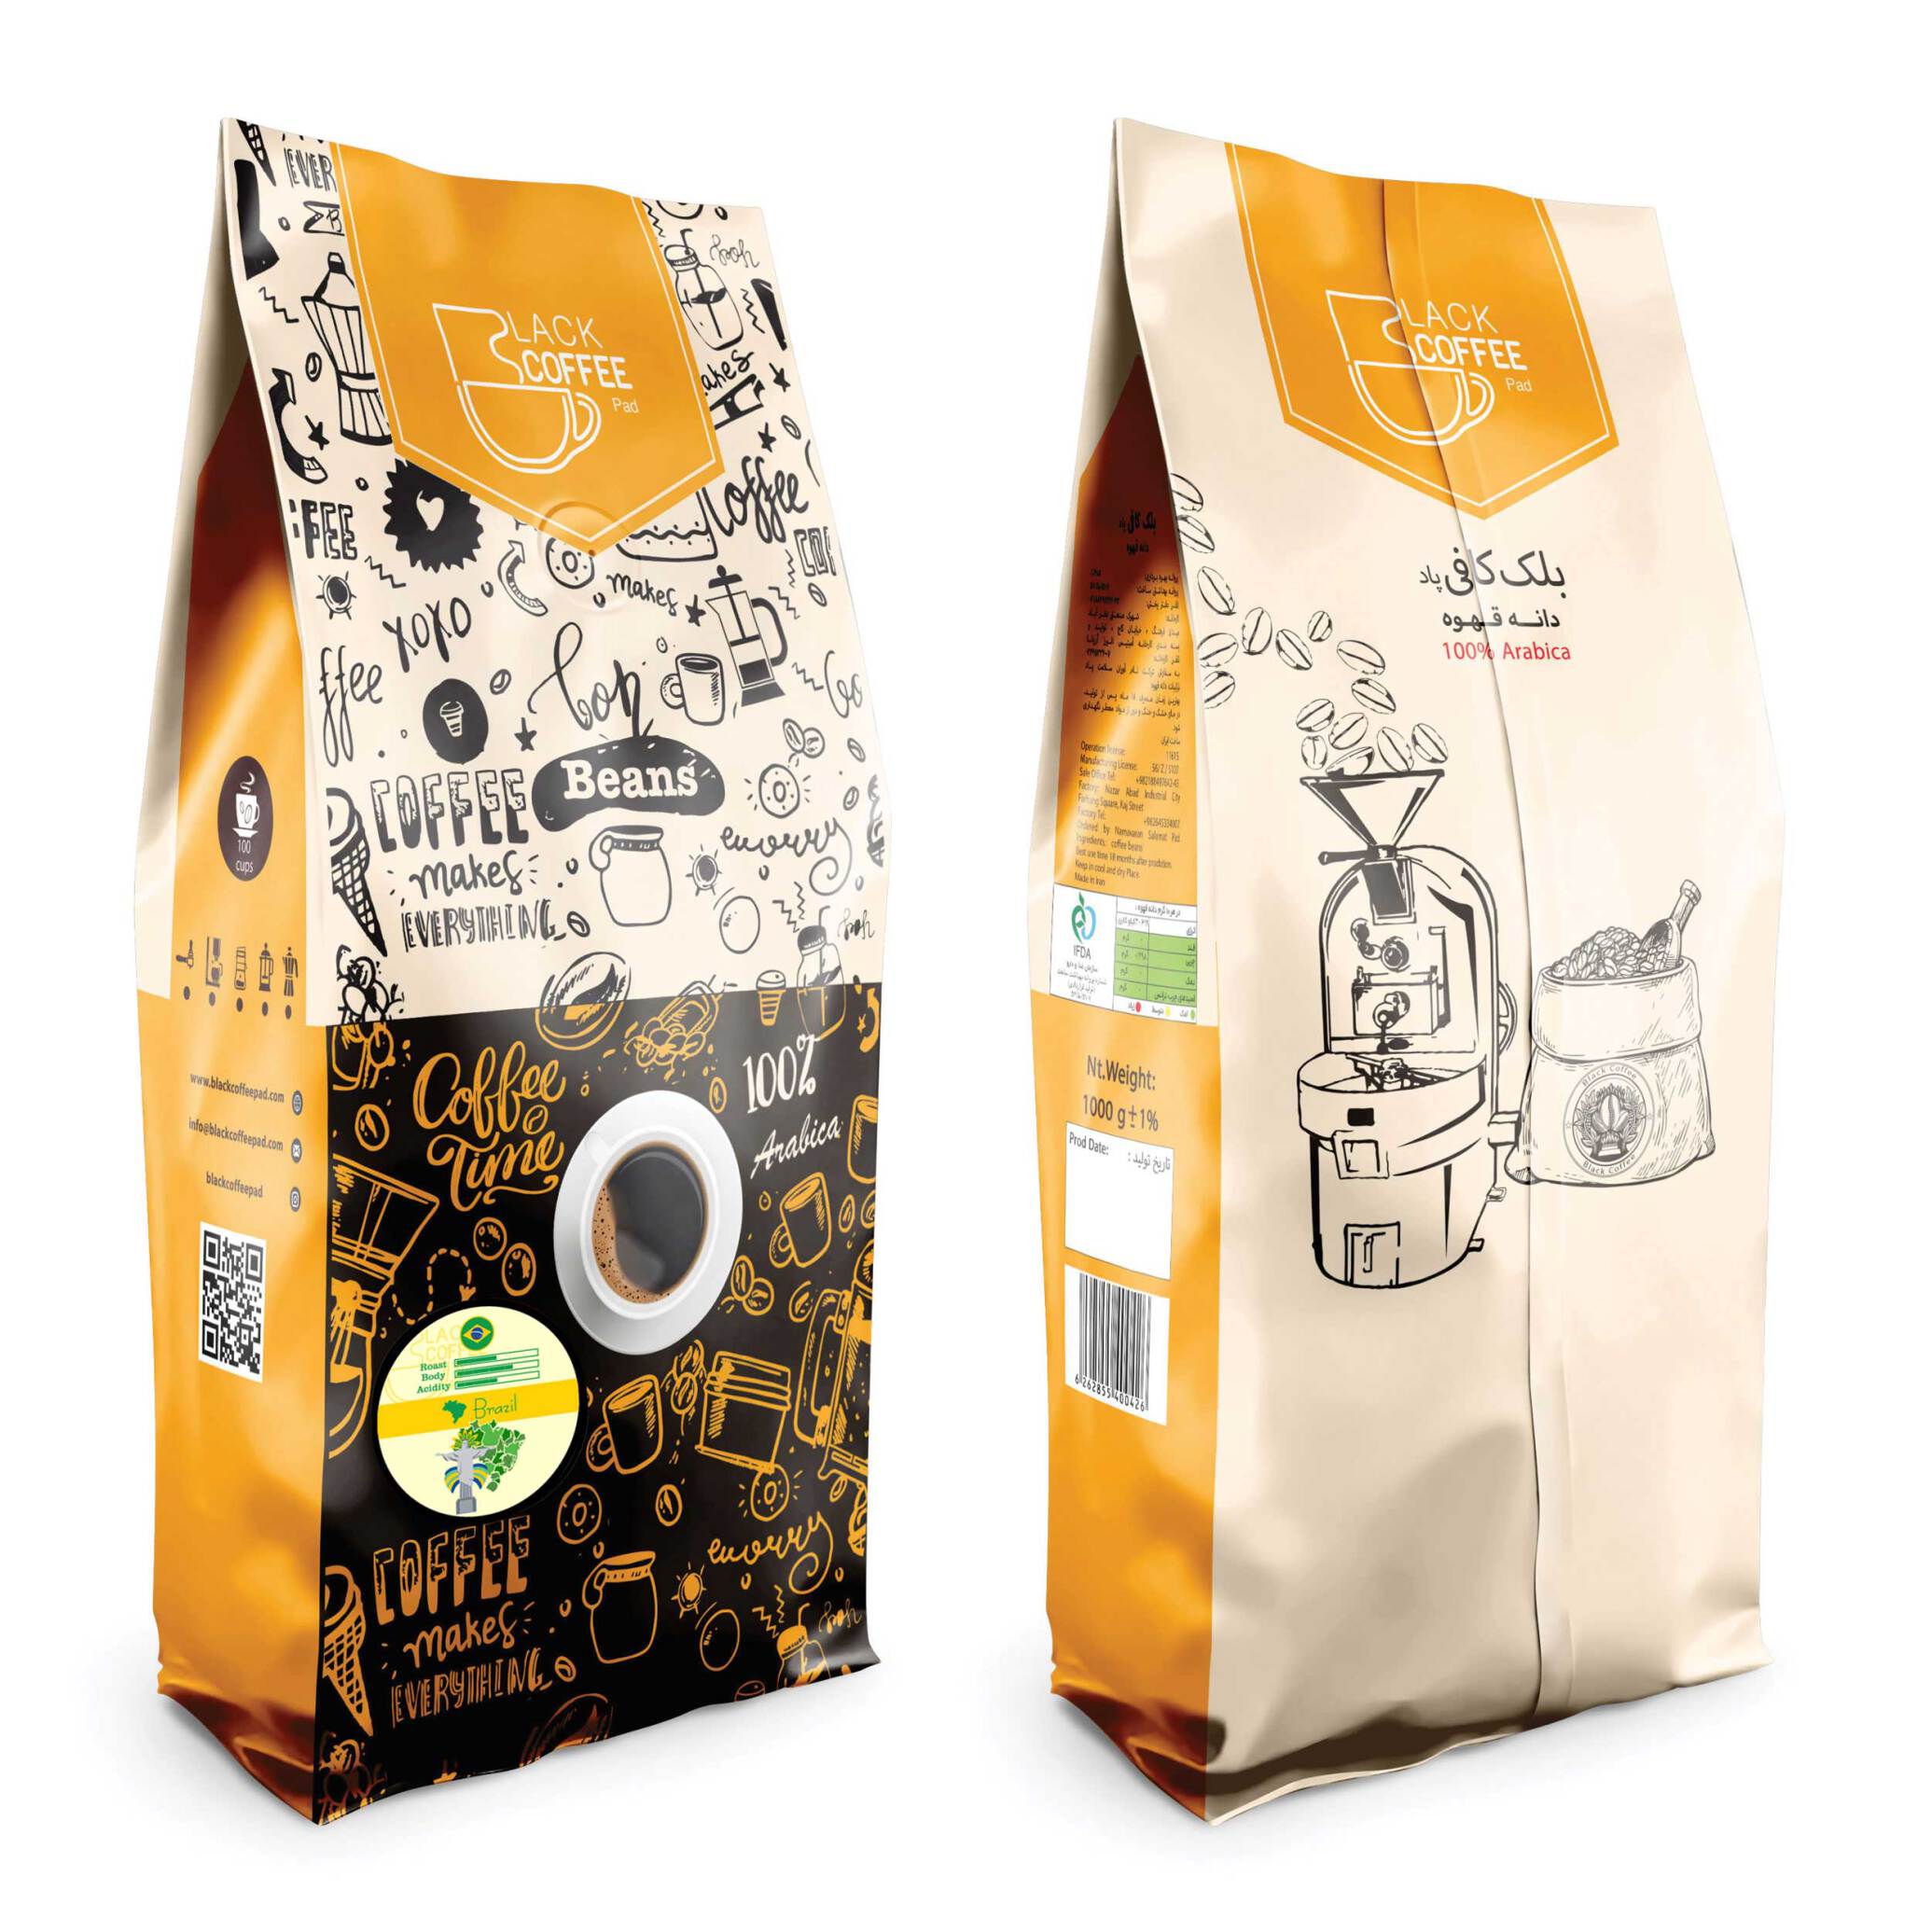  دانه قهوه برزیل | Brasil coffee beans - یک کیلویی | دانه قهوه | خرید دانه | بلک کافی 